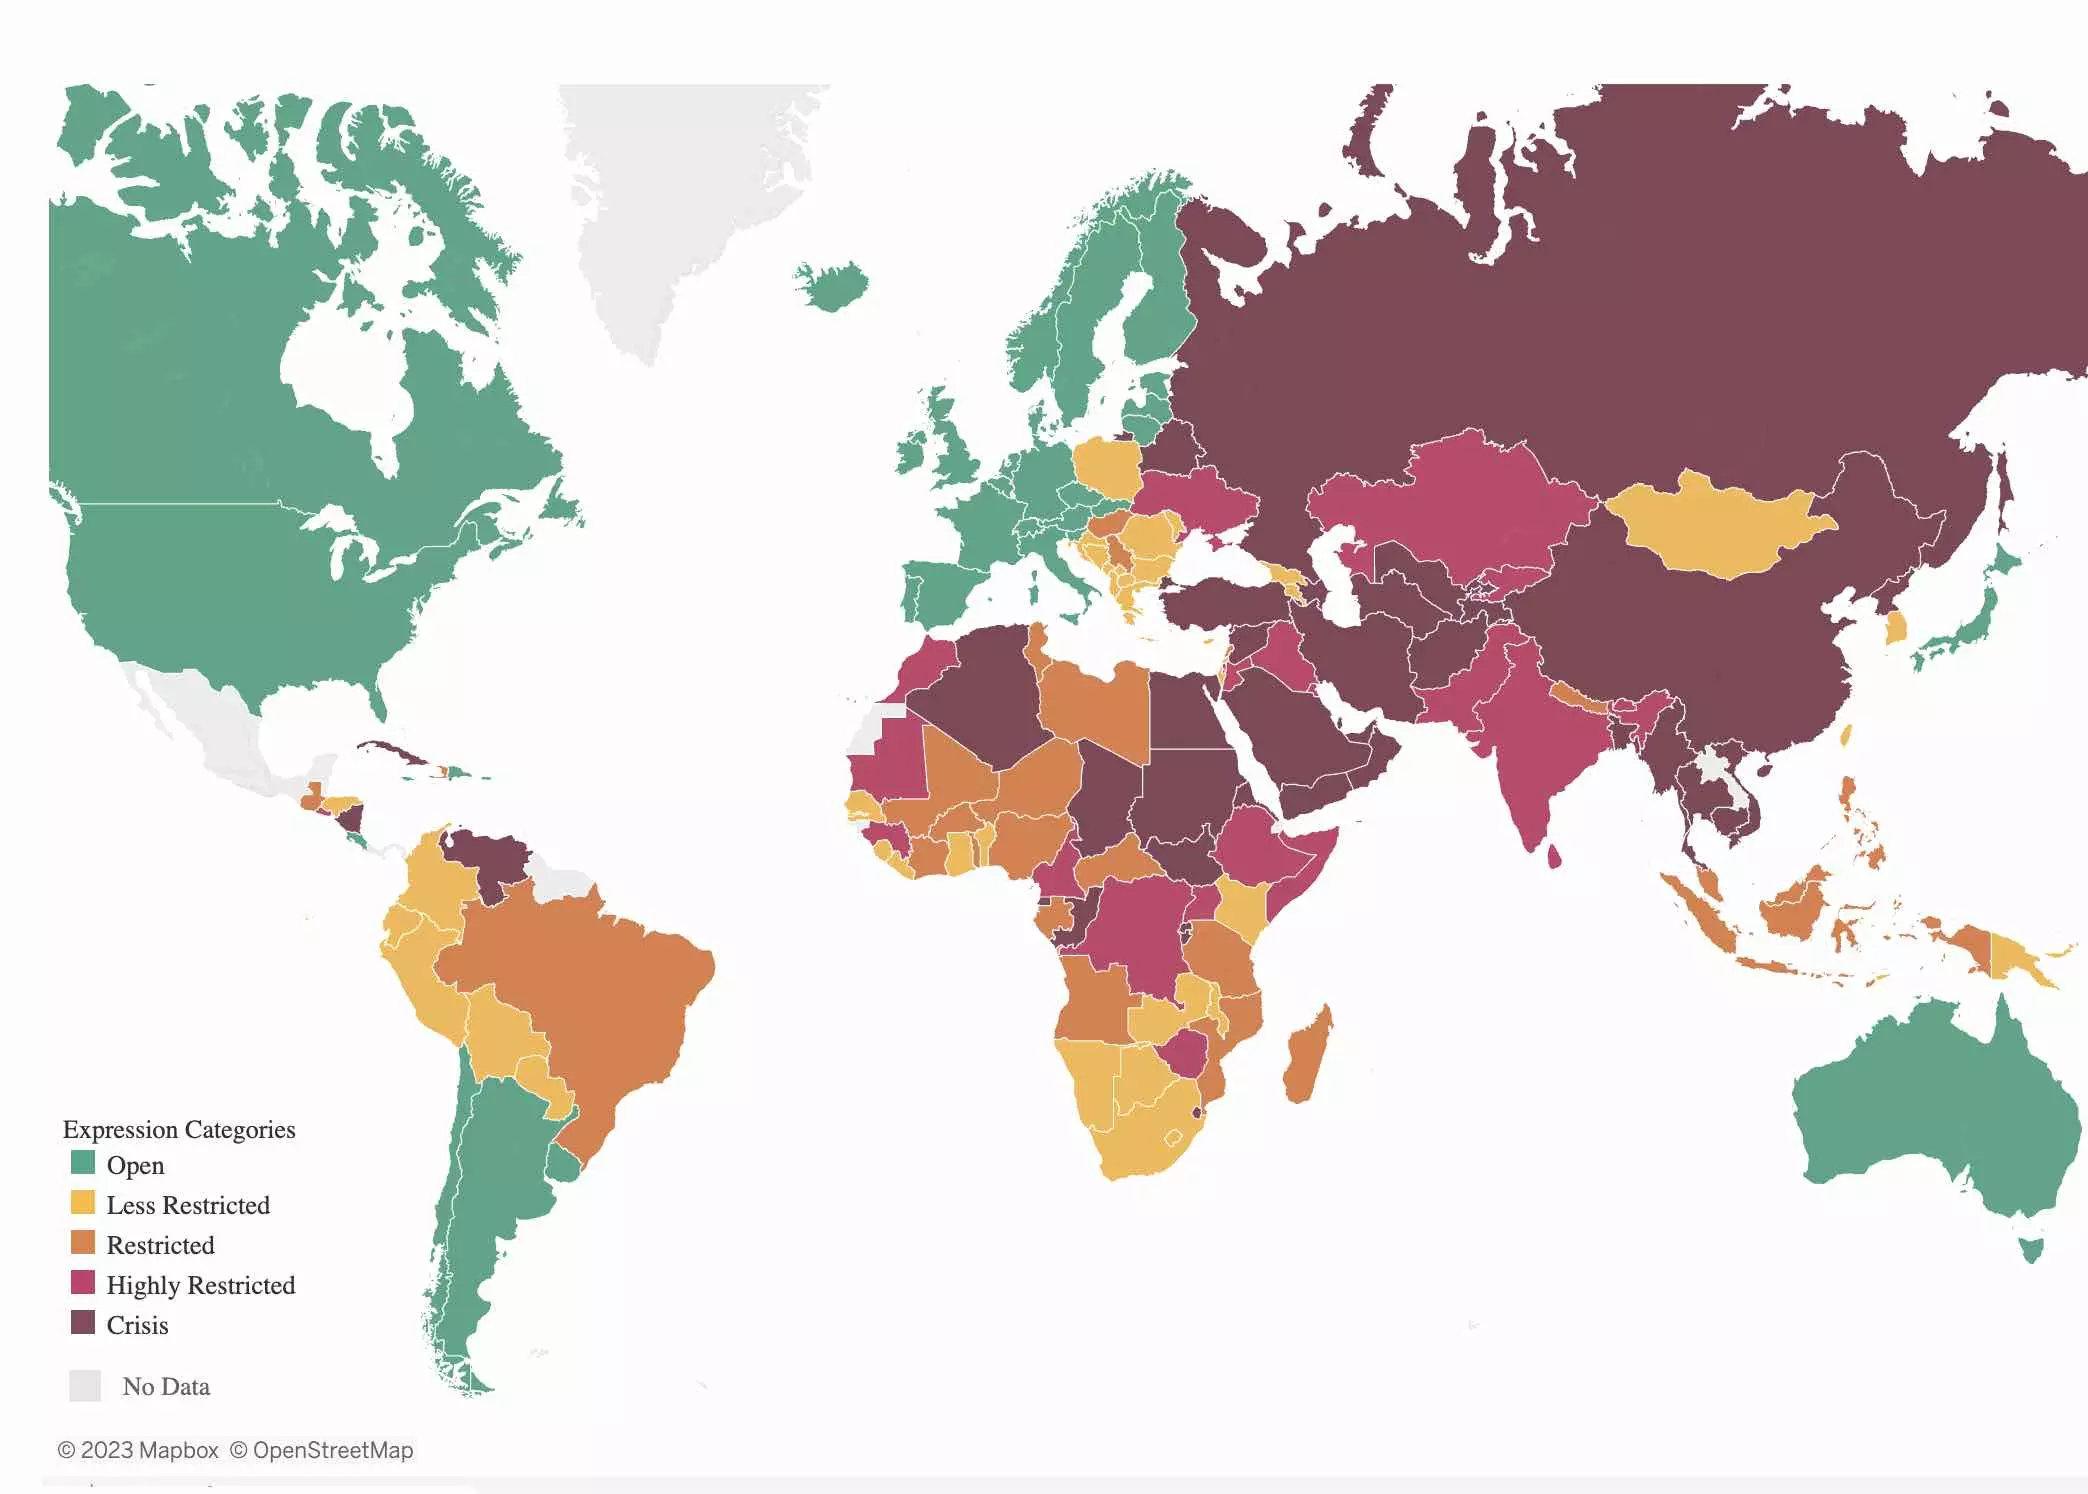 Mapa mundi mostra estado da liberdade de expressão no Brasil e demais países, segundo a ONG Article 19 